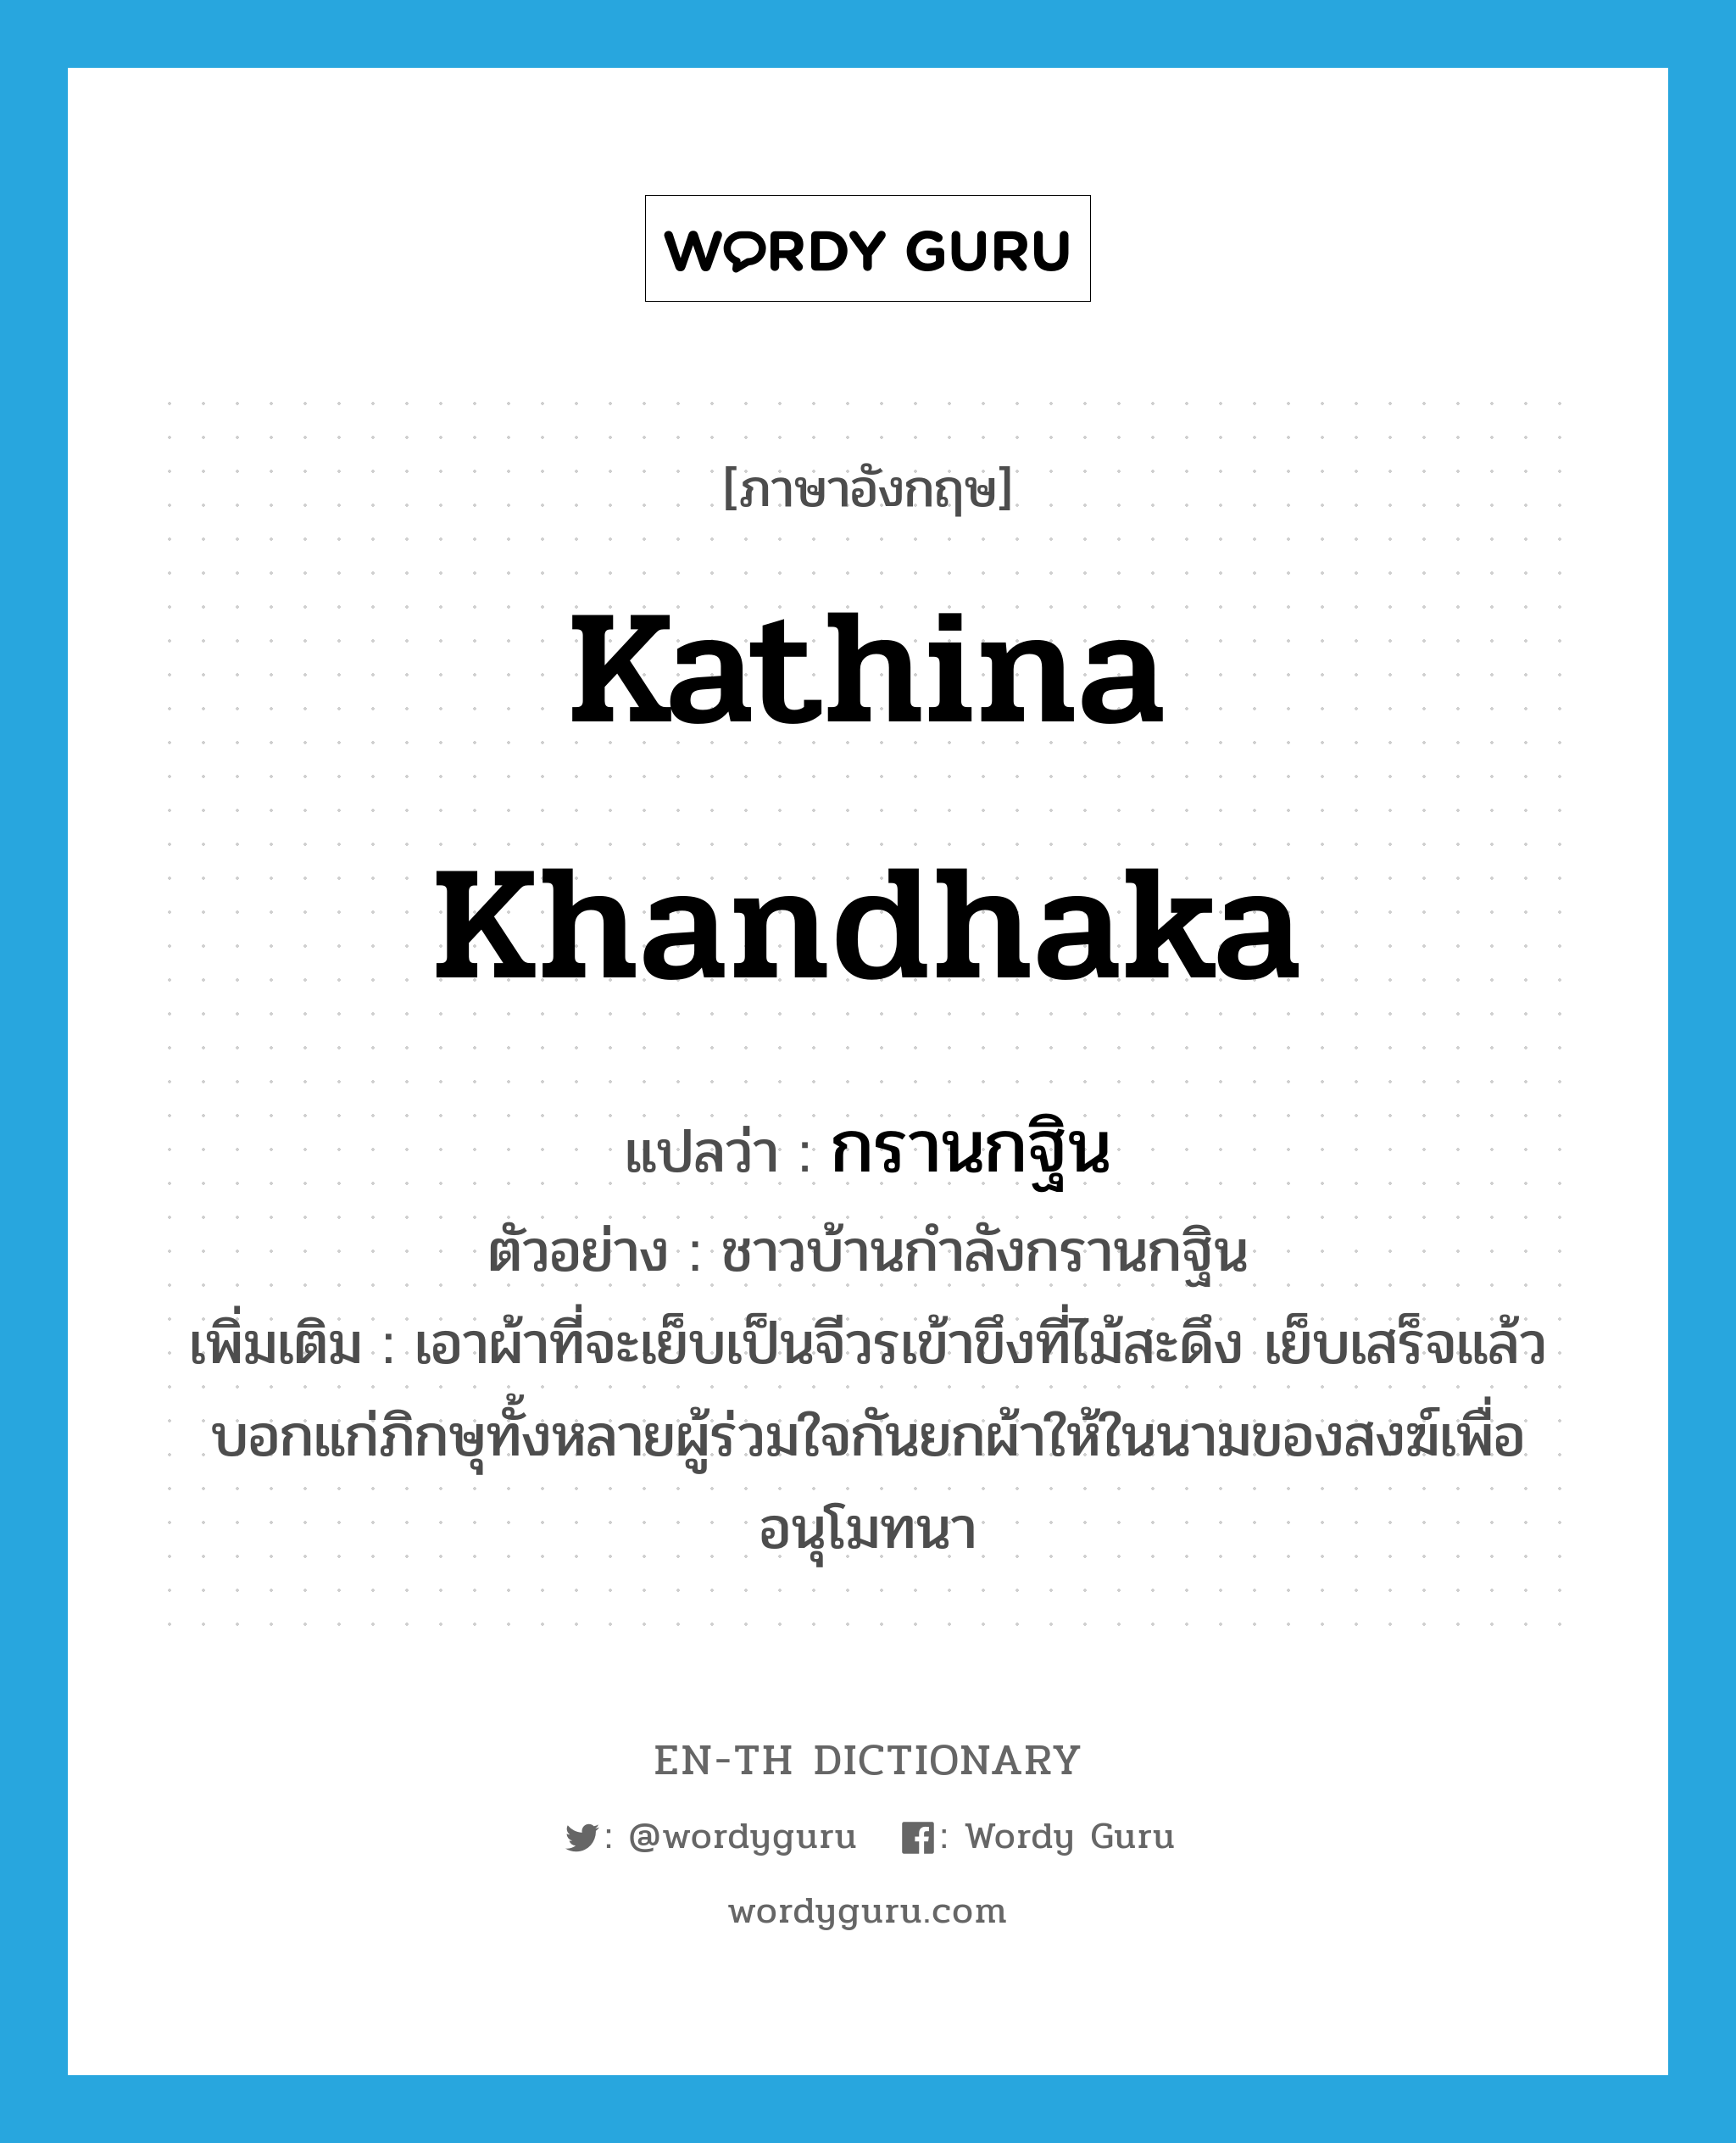 Kathina Khandhaka แปลว่า?, คำศัพท์ภาษาอังกฤษ Kathina Khandhaka แปลว่า กรานกฐิน ประเภท V ตัวอย่าง ชาวบ้านกำลังกรานกฐิน เพิ่มเติม เอาผ้าที่จะเย็บเป็นจีวรเข้าขึงที่ไม้สะดึง เย็บเสร็จแล้วบอกแก่ภิกษุทั้งหลายผู้ร่วมใจกันยกผ้าให้ในนามของสงฆ์เพื่ออนุโมทนา หมวด V